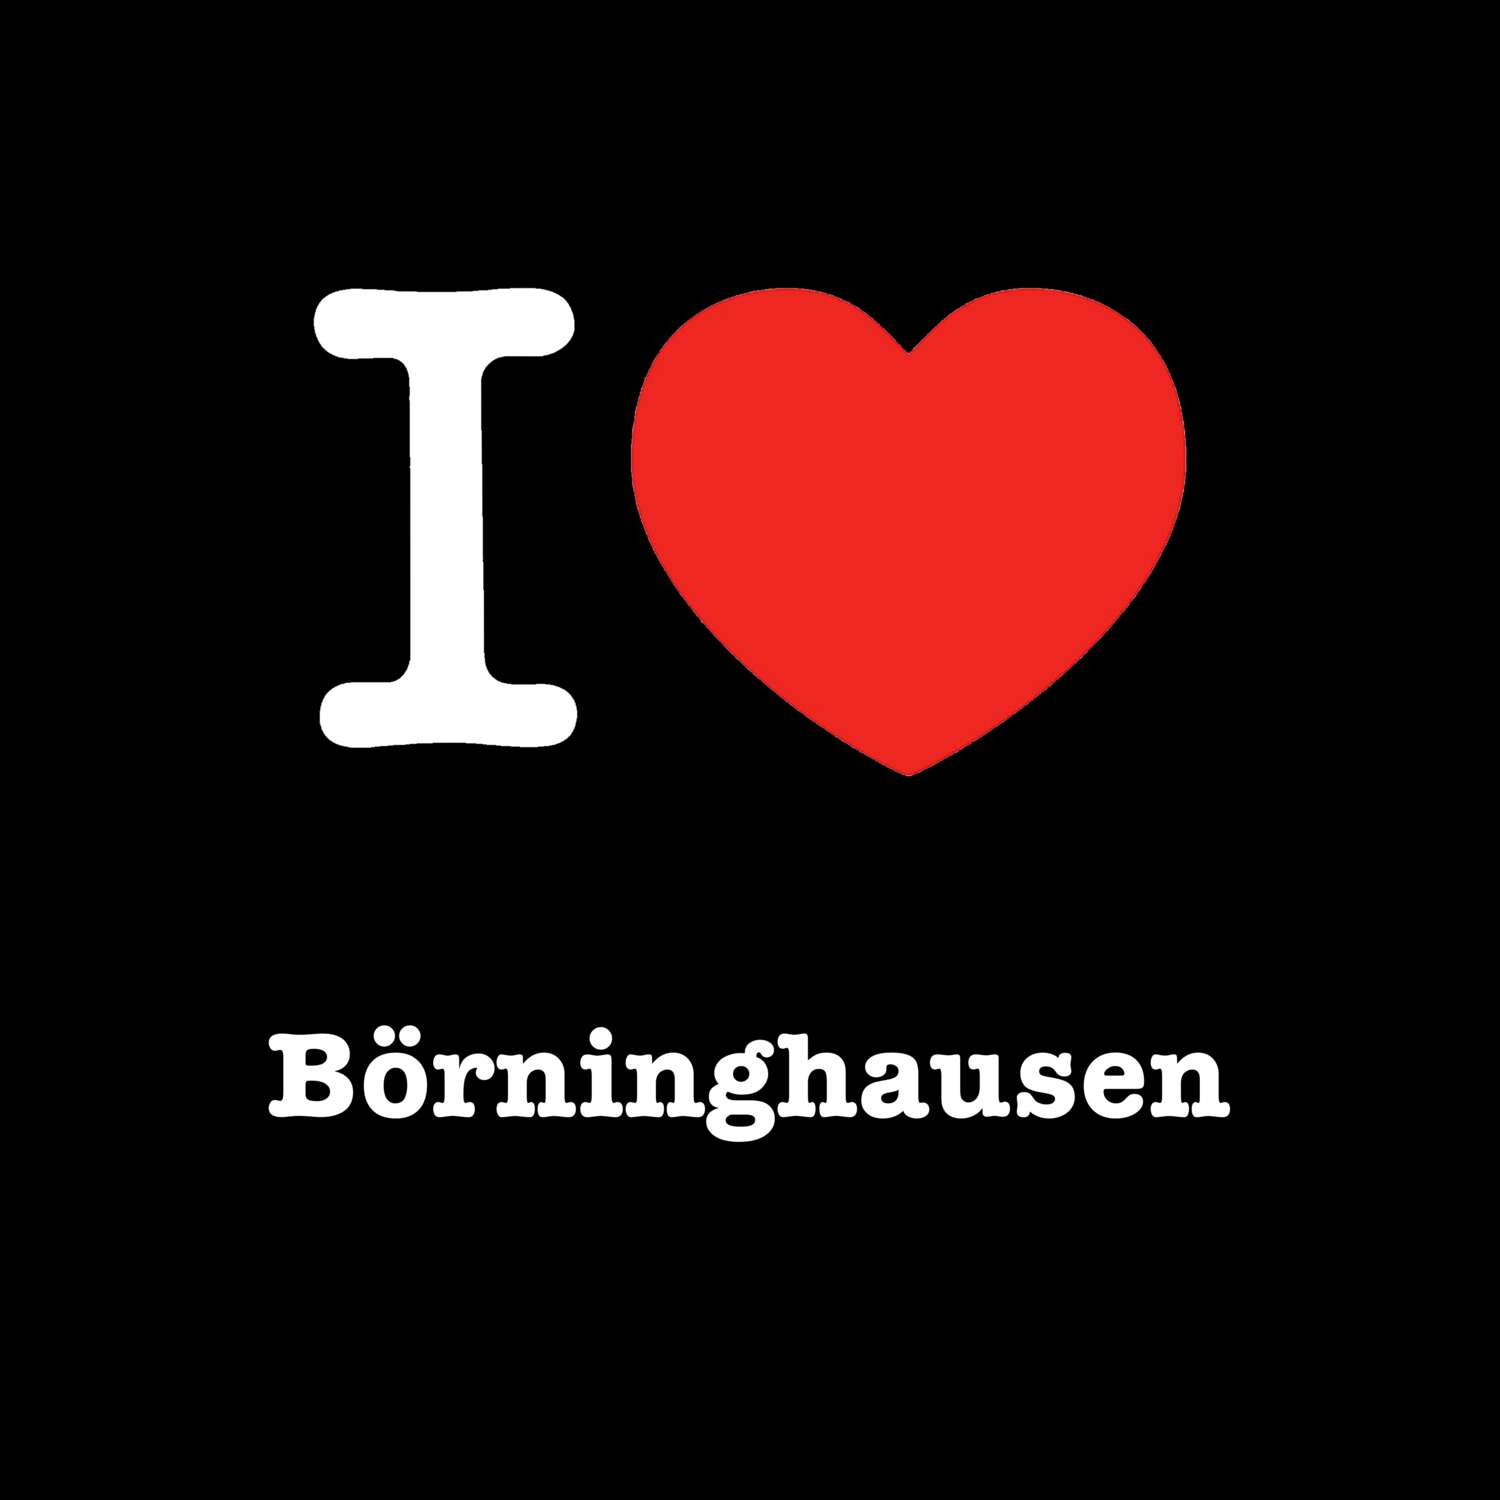 Börninghausen T-Shirt »I love«